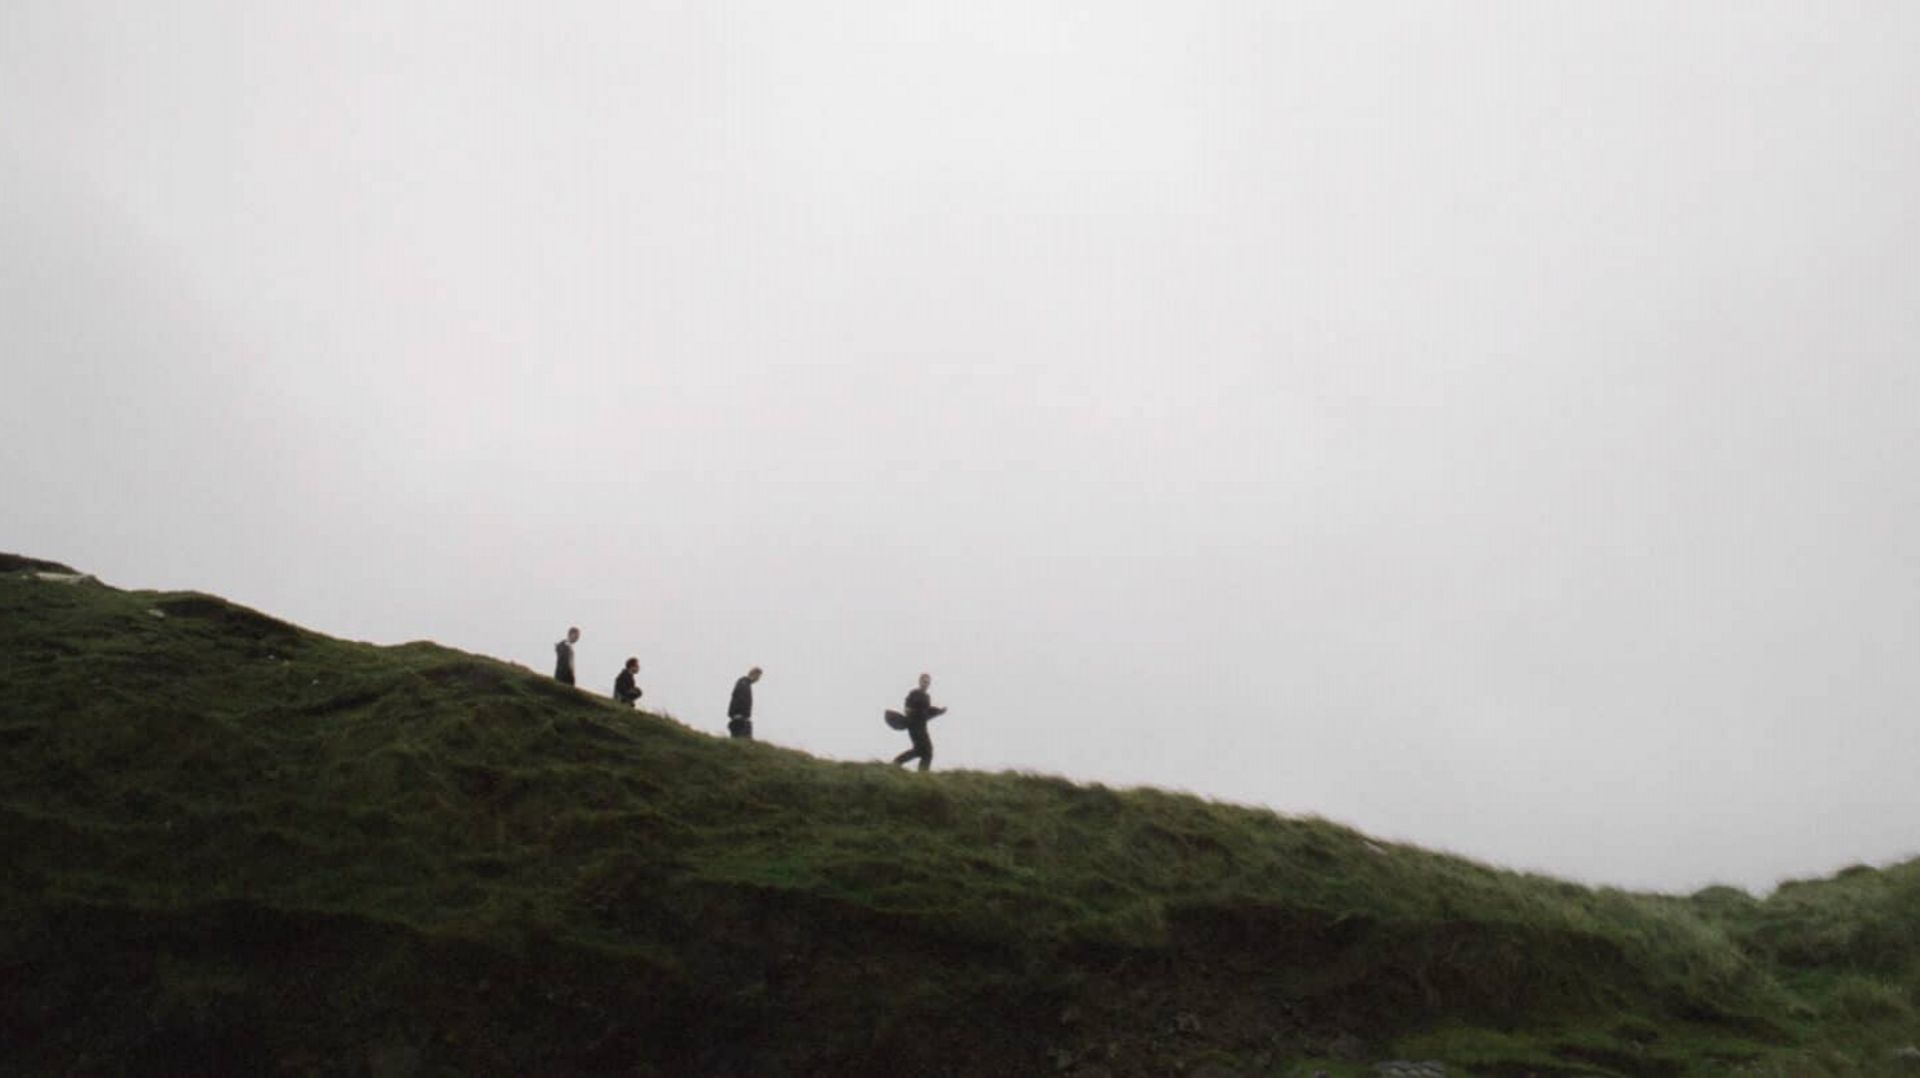 deathcrash lors de l’enregistrement de "Less" sur une petite île au large de l’Écosse.